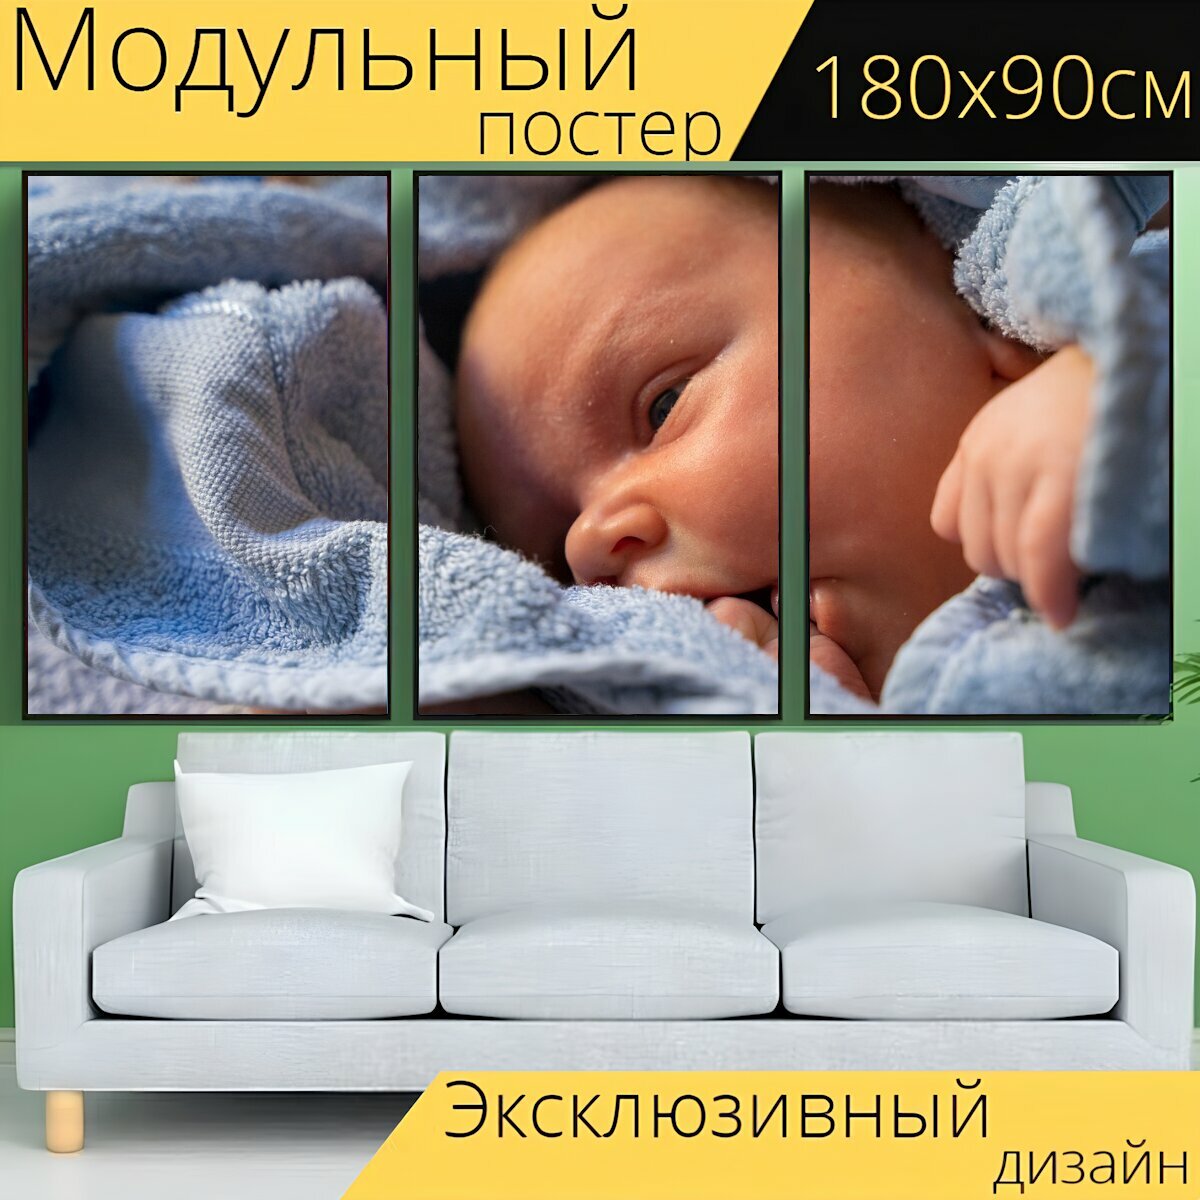 Модульный постер "Младенец, новорожденный, новорожденные" 180 x 90 см. для интерьера